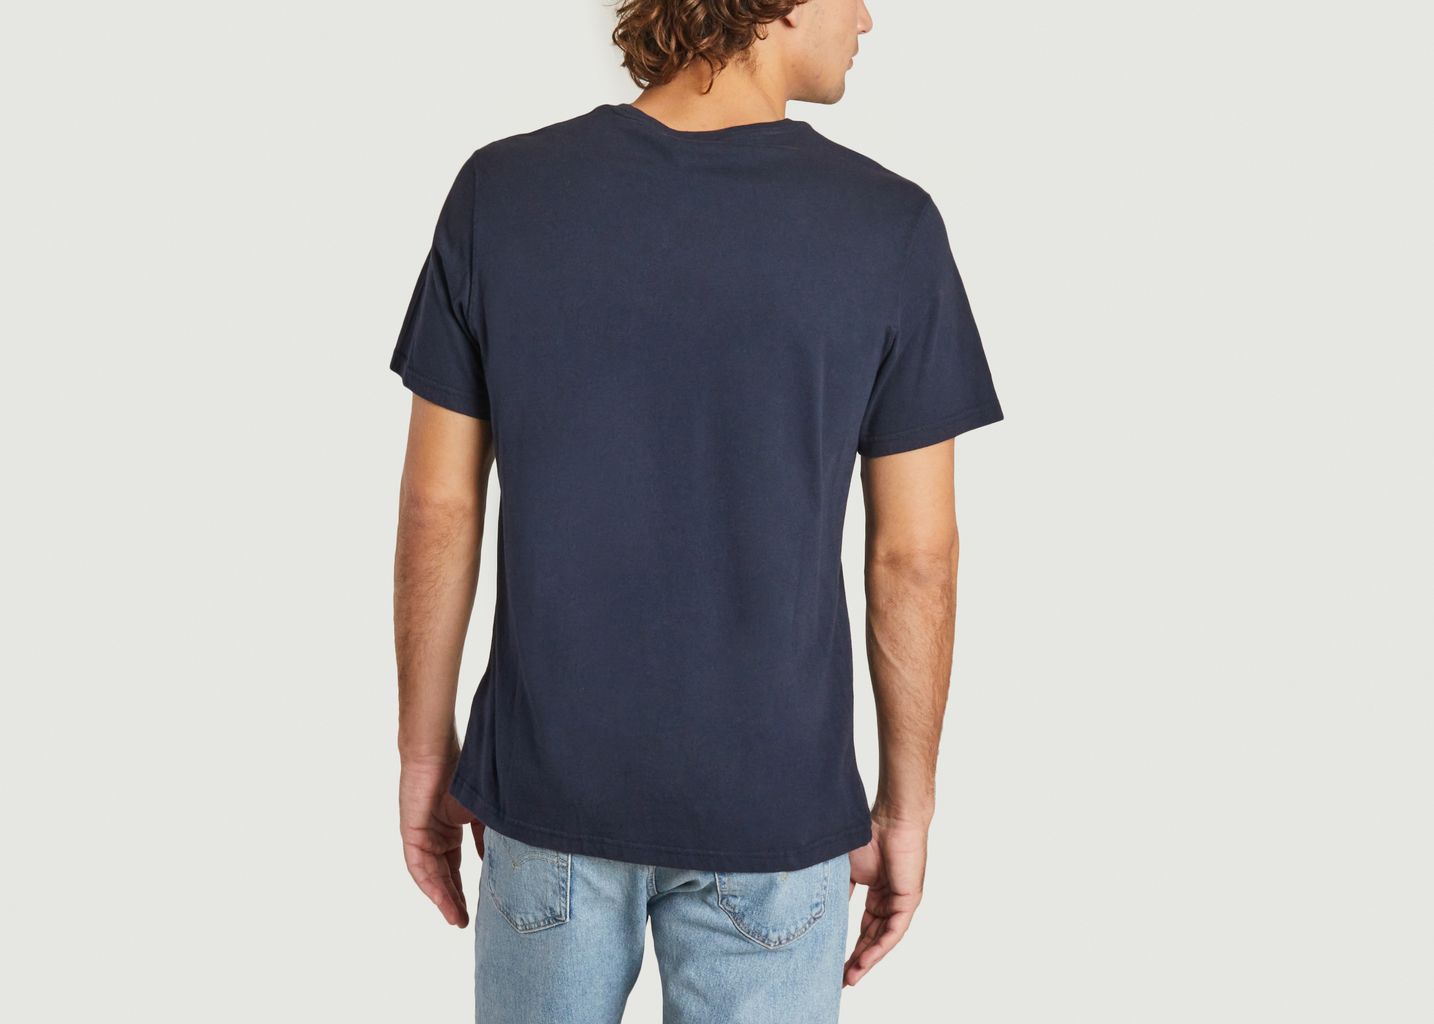 Thurso T-shirt - Barbour